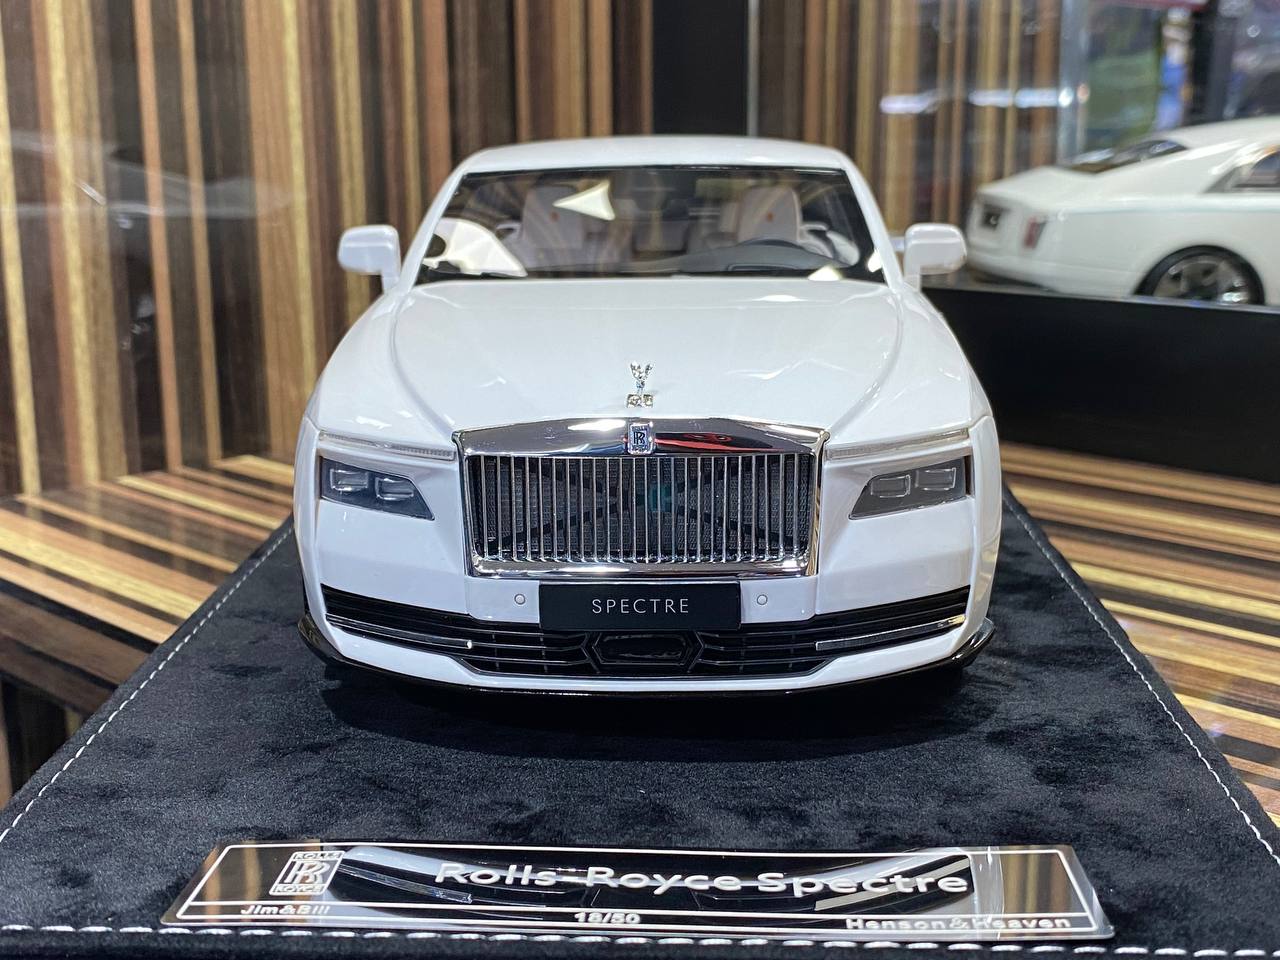 1/18 Rolls-Royce Spectre Pearl White Rolls-Royce Motor Cars|Sold in Dturman.com Dubai UAE.